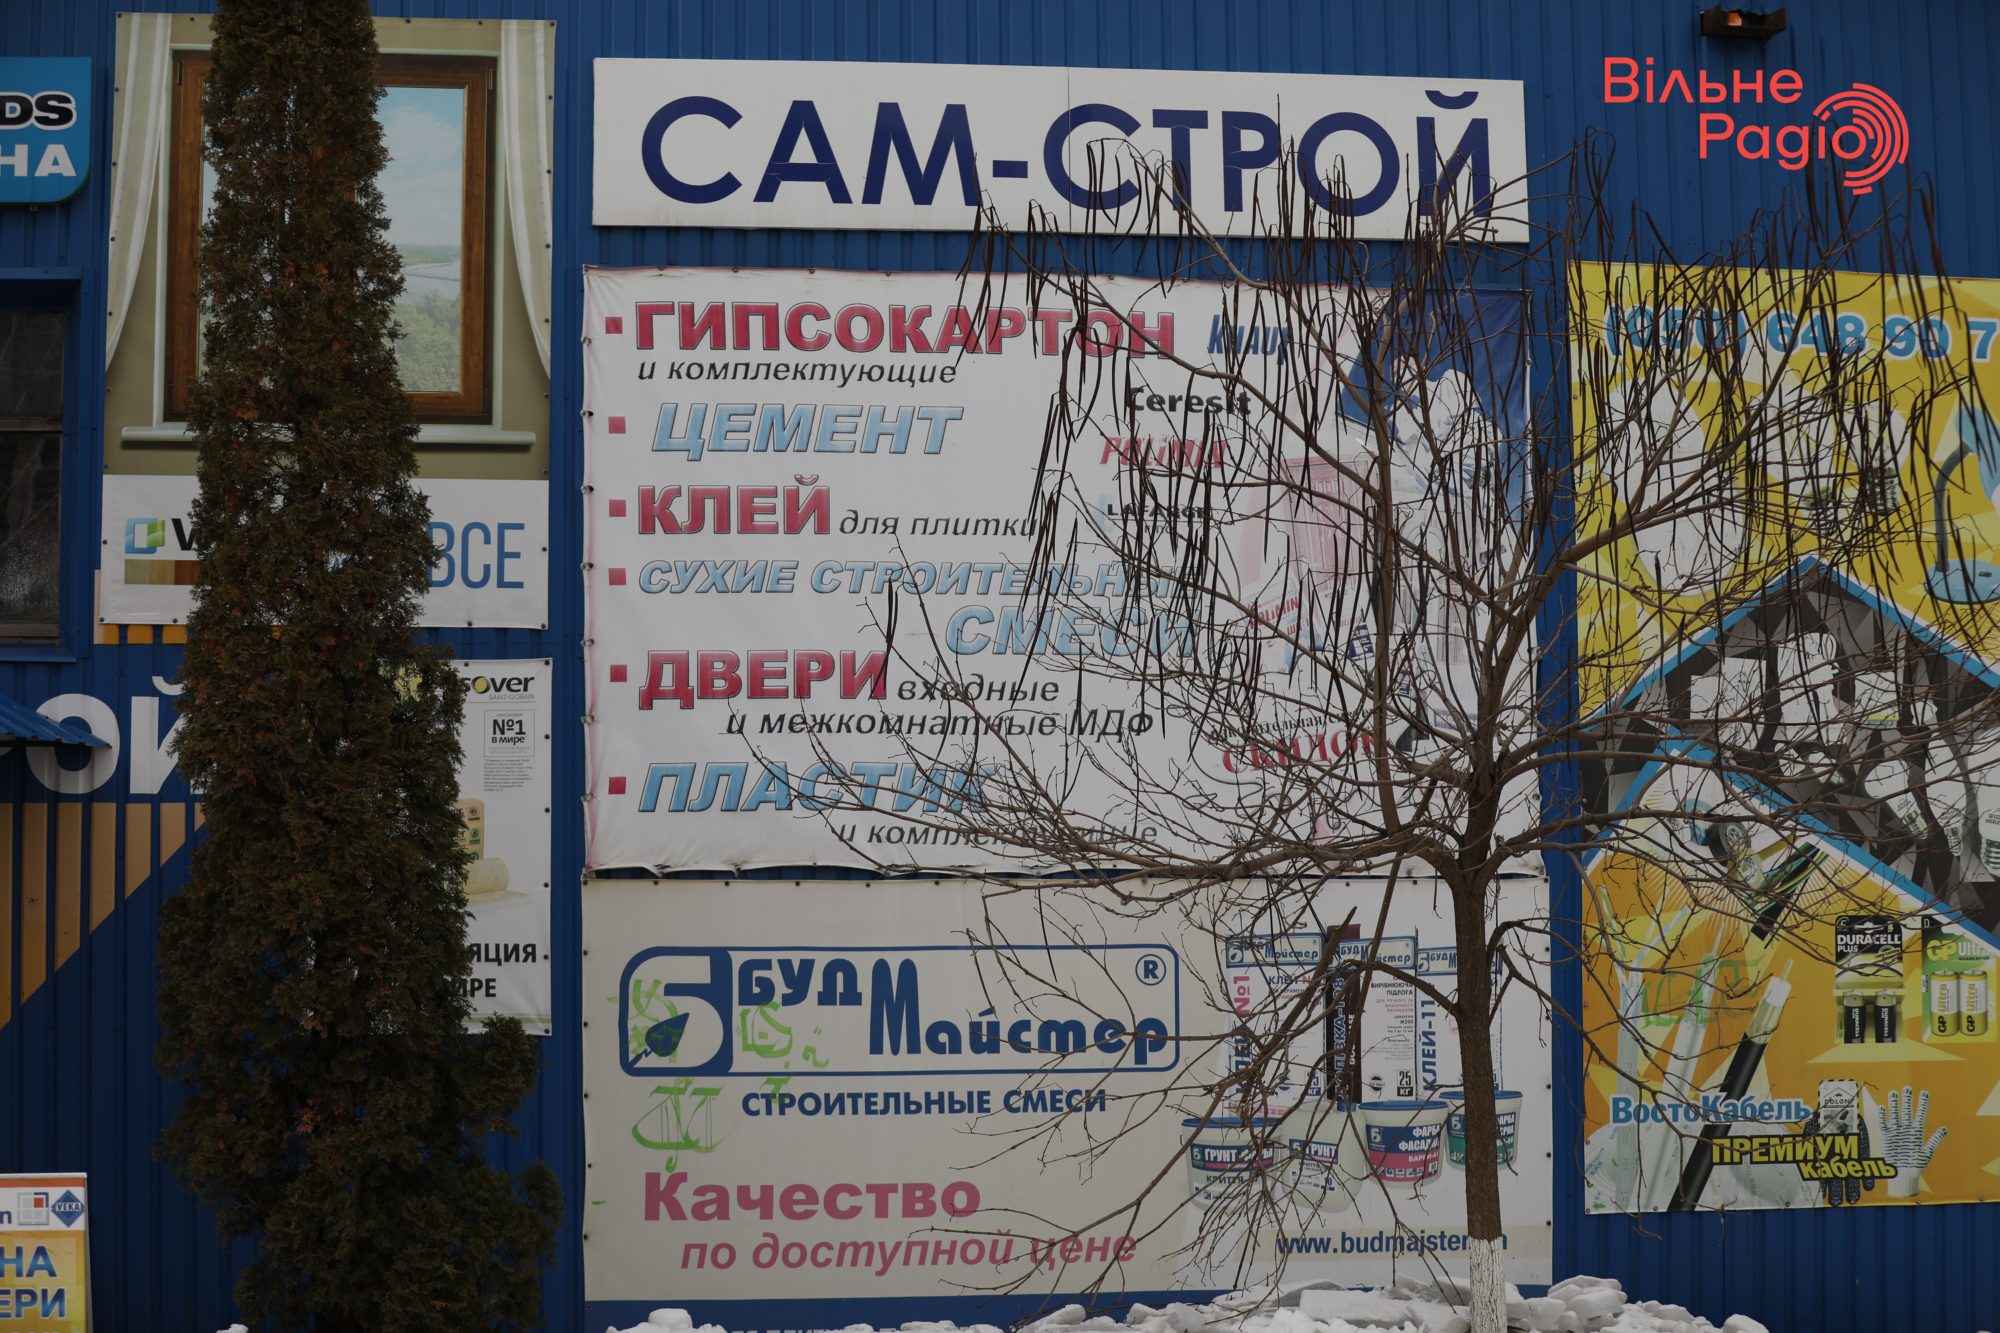 Глав 7 громад Донбасса просят убрать рекламу, которая нарушает “языковой” закон. Какая ситуация в Бахмуте”(ФОТО) 4